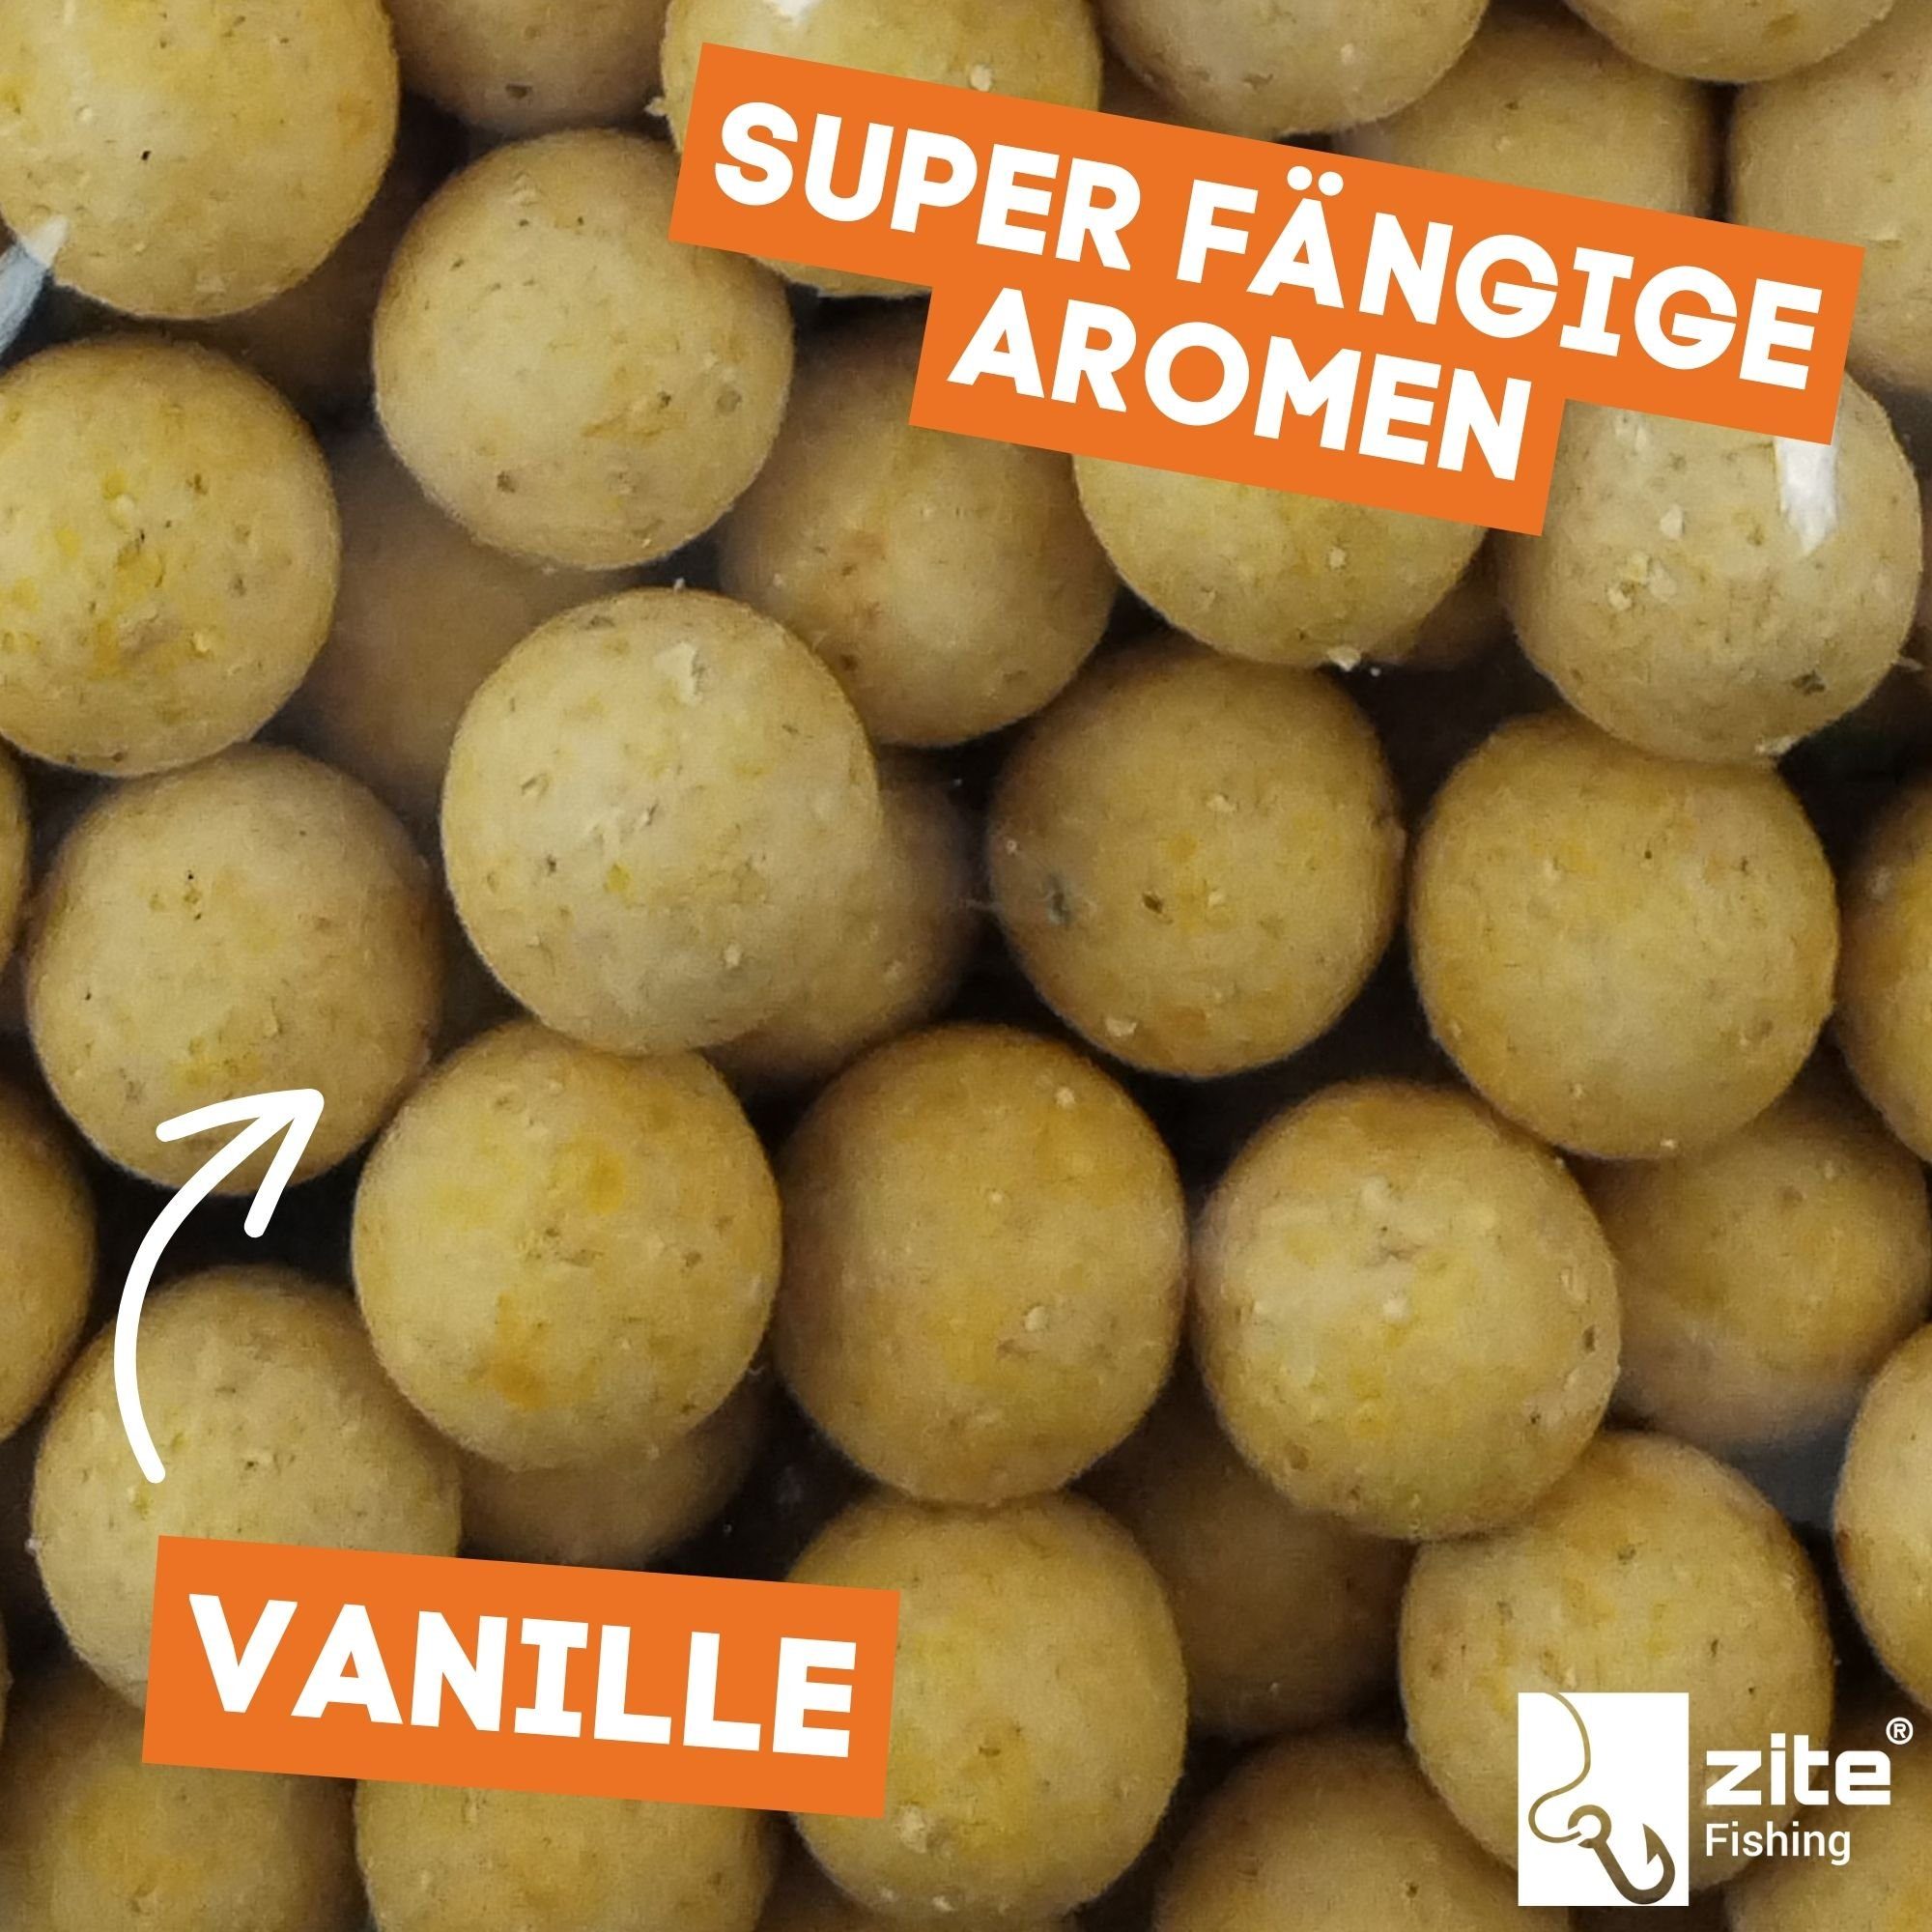 Zite Kunstköder Aromen - Karpfenköder 18mm Vanille - Viele Futterboilies 3kg Karpfenangeln